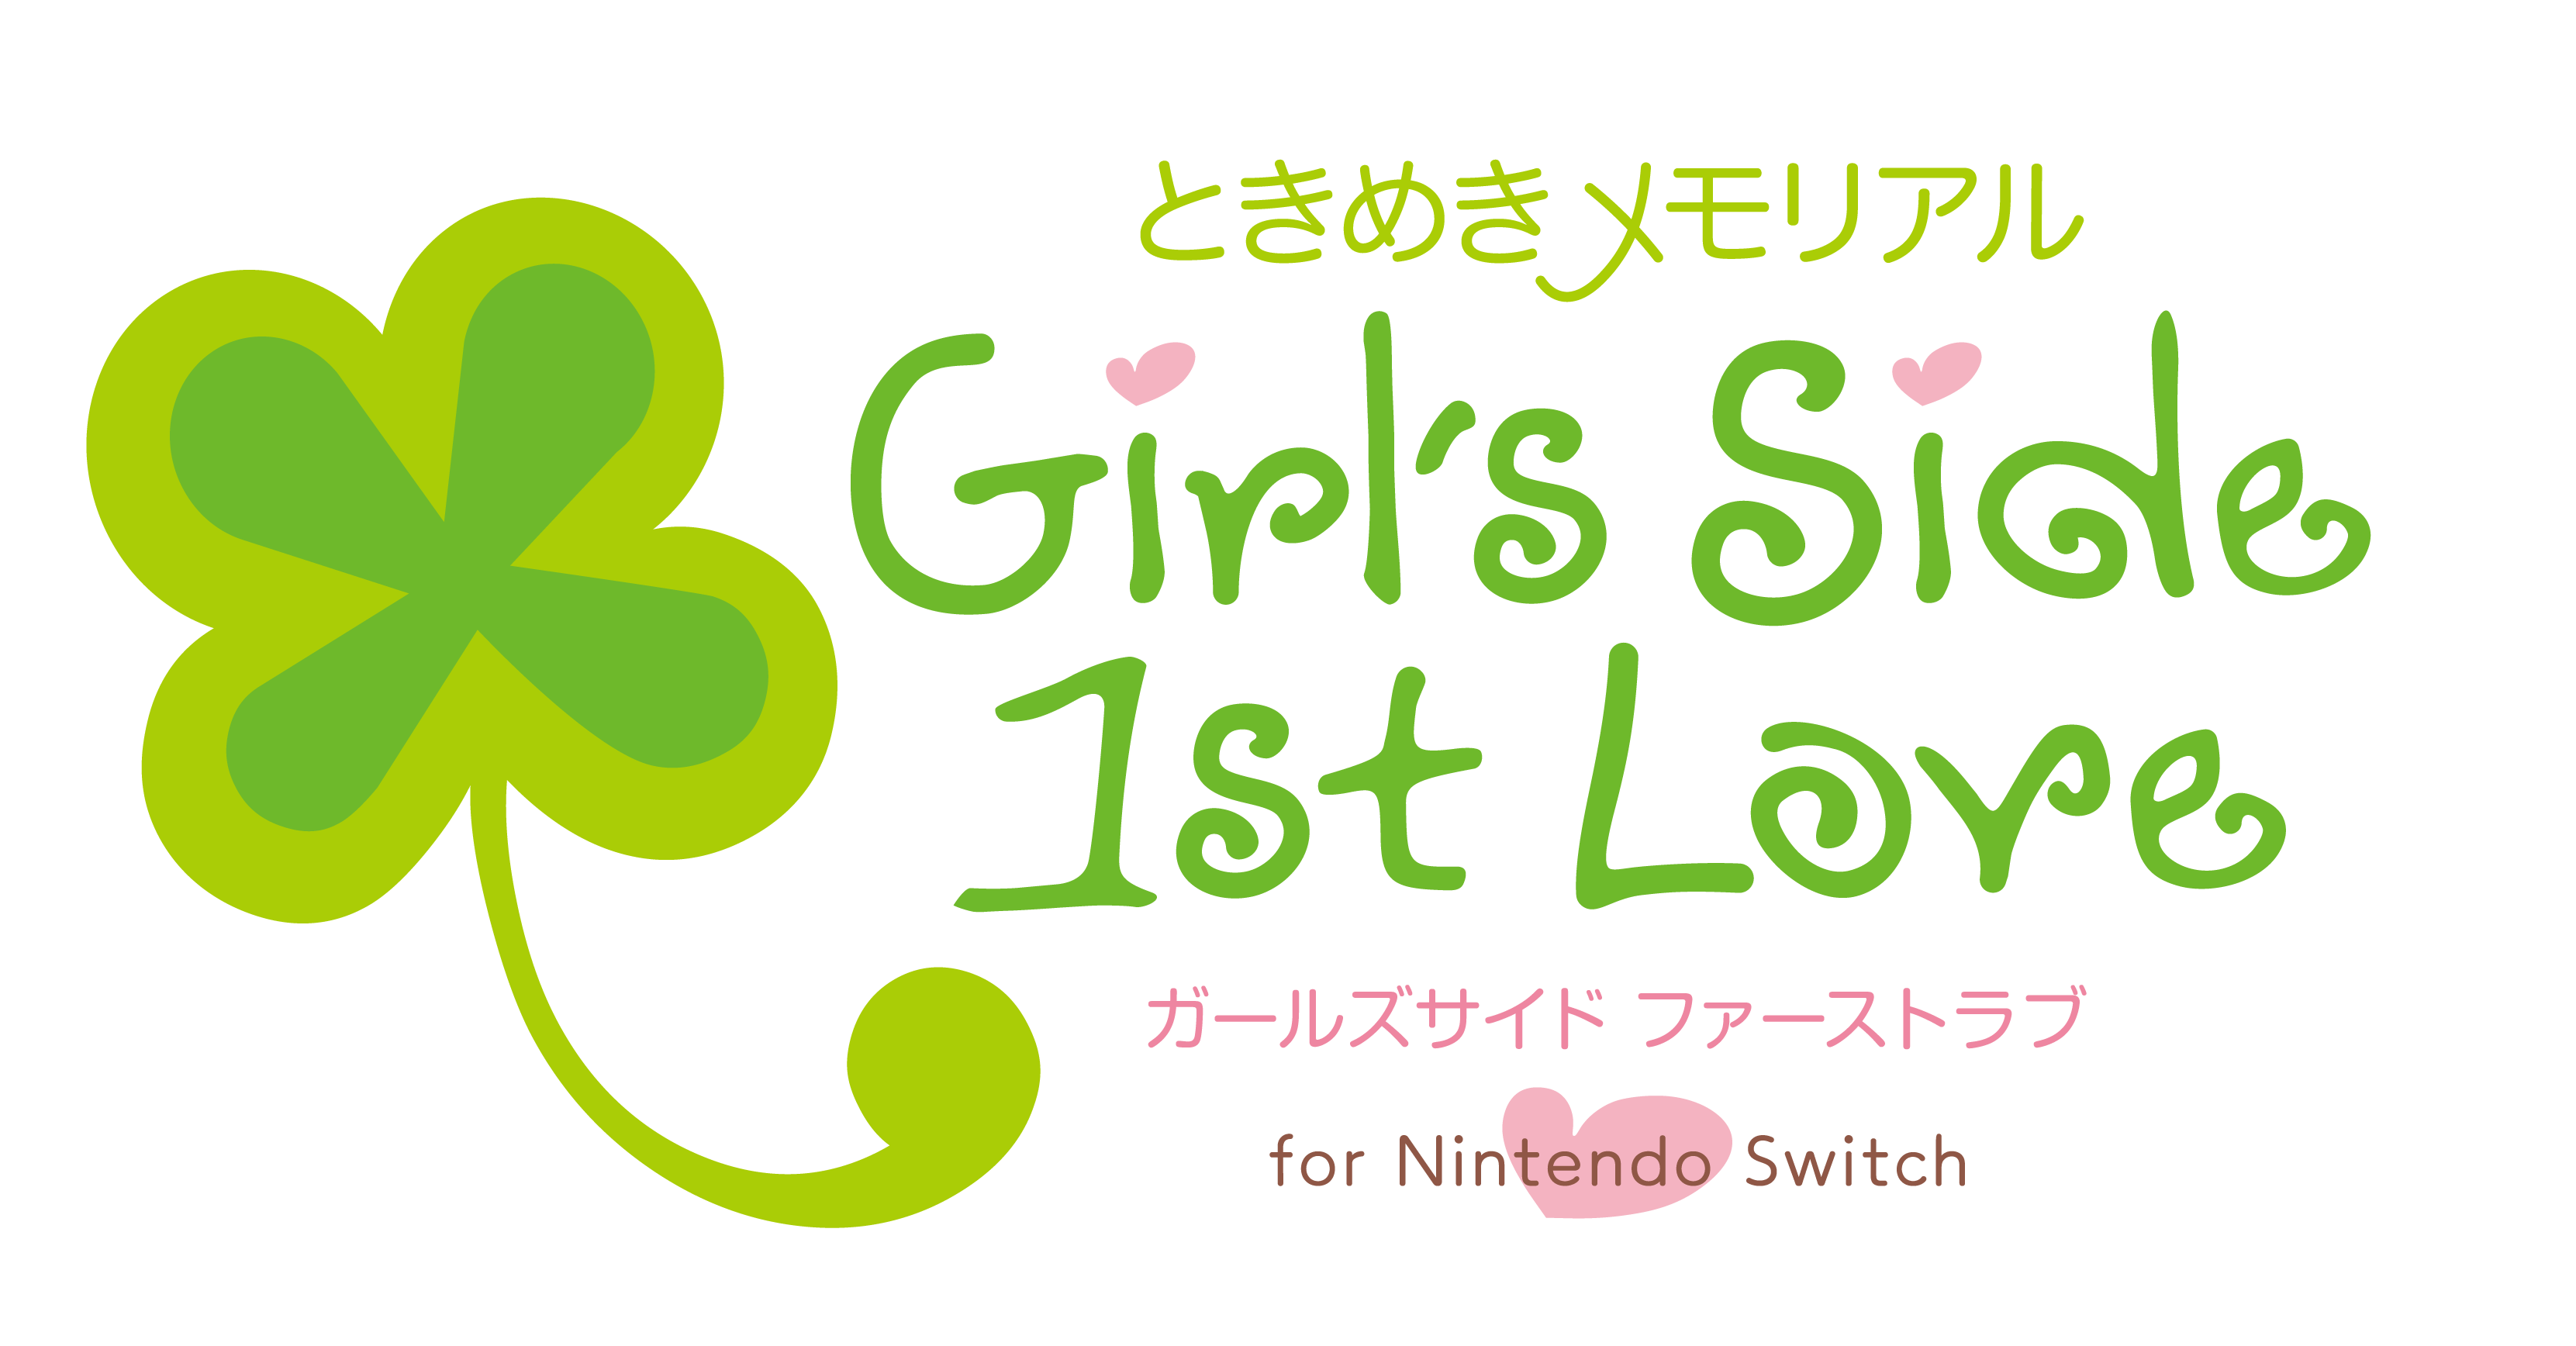 『ときめきメモリアルGirl’s Side 1st Love for Nintendo Switch』